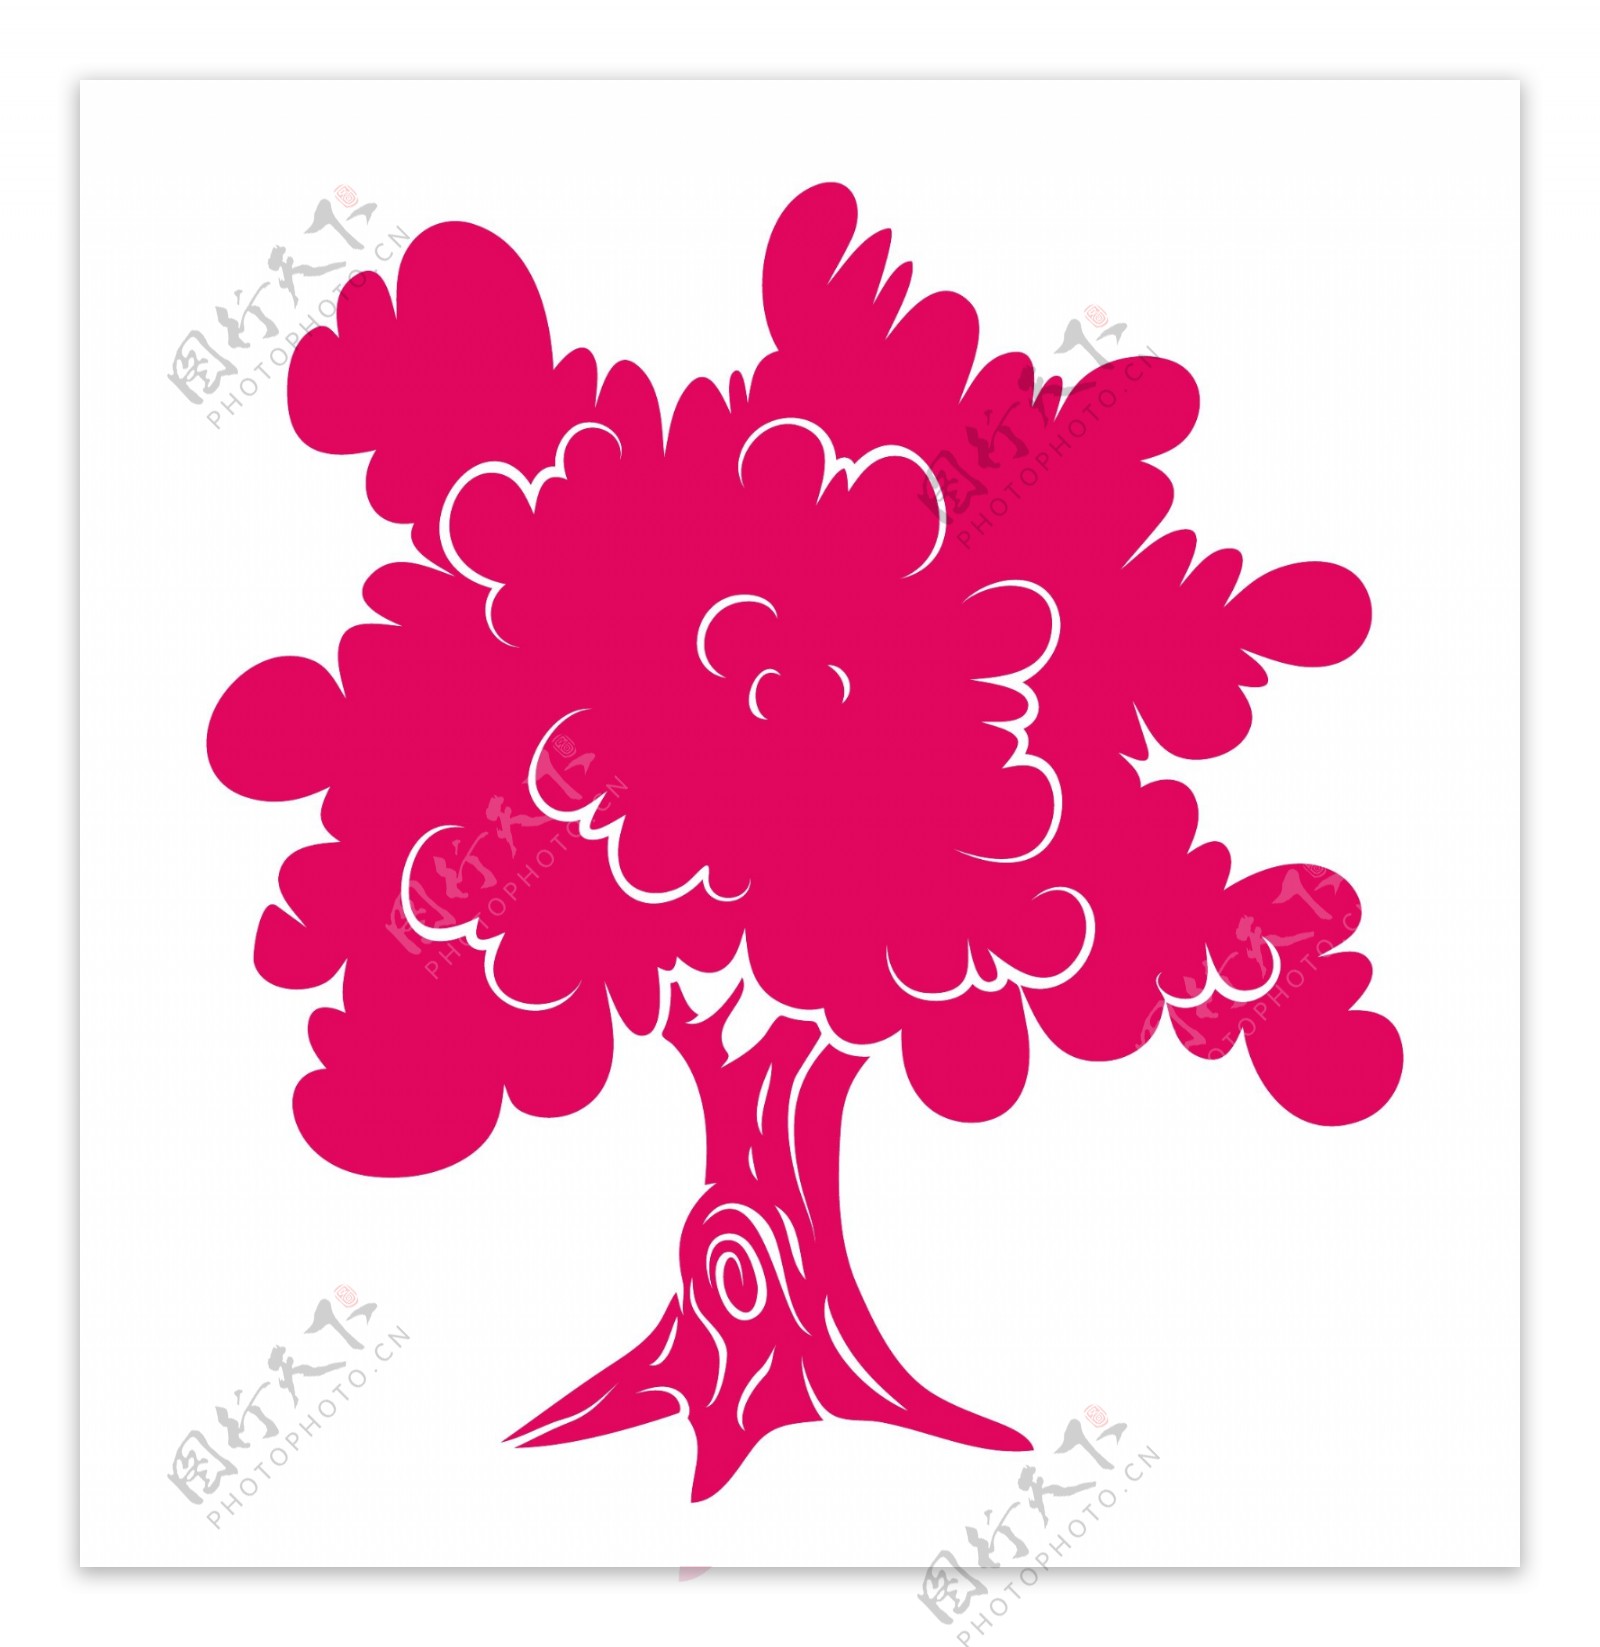 粉红色的树的形状